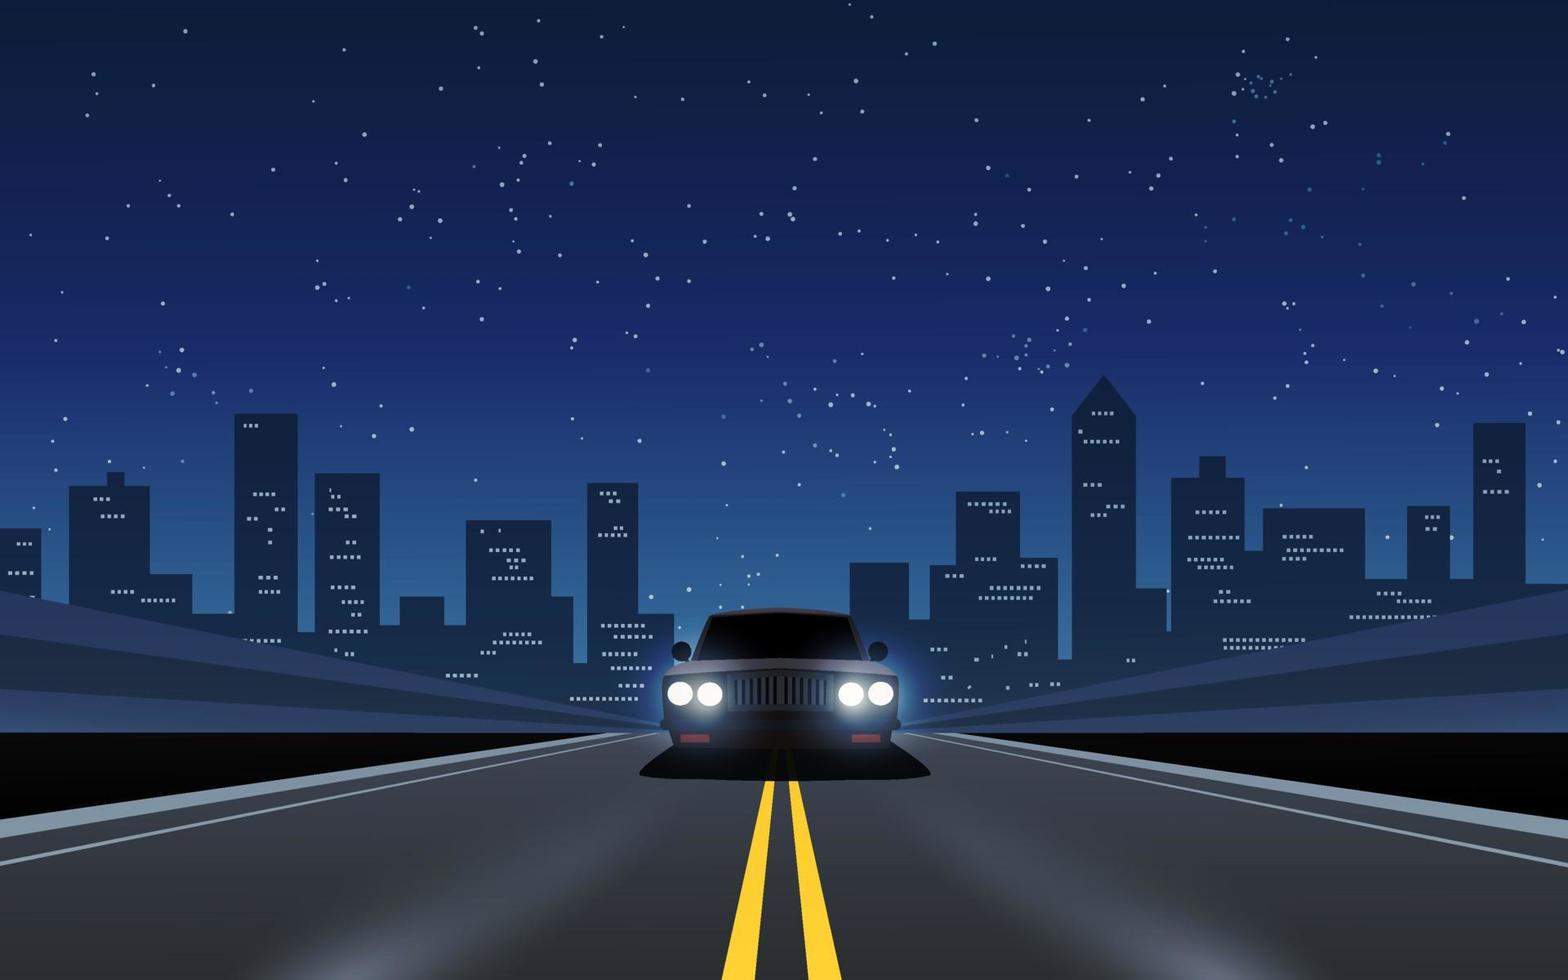 stadtnachtautobahnillustration mit einem auto und einem sternenhimmel vektor